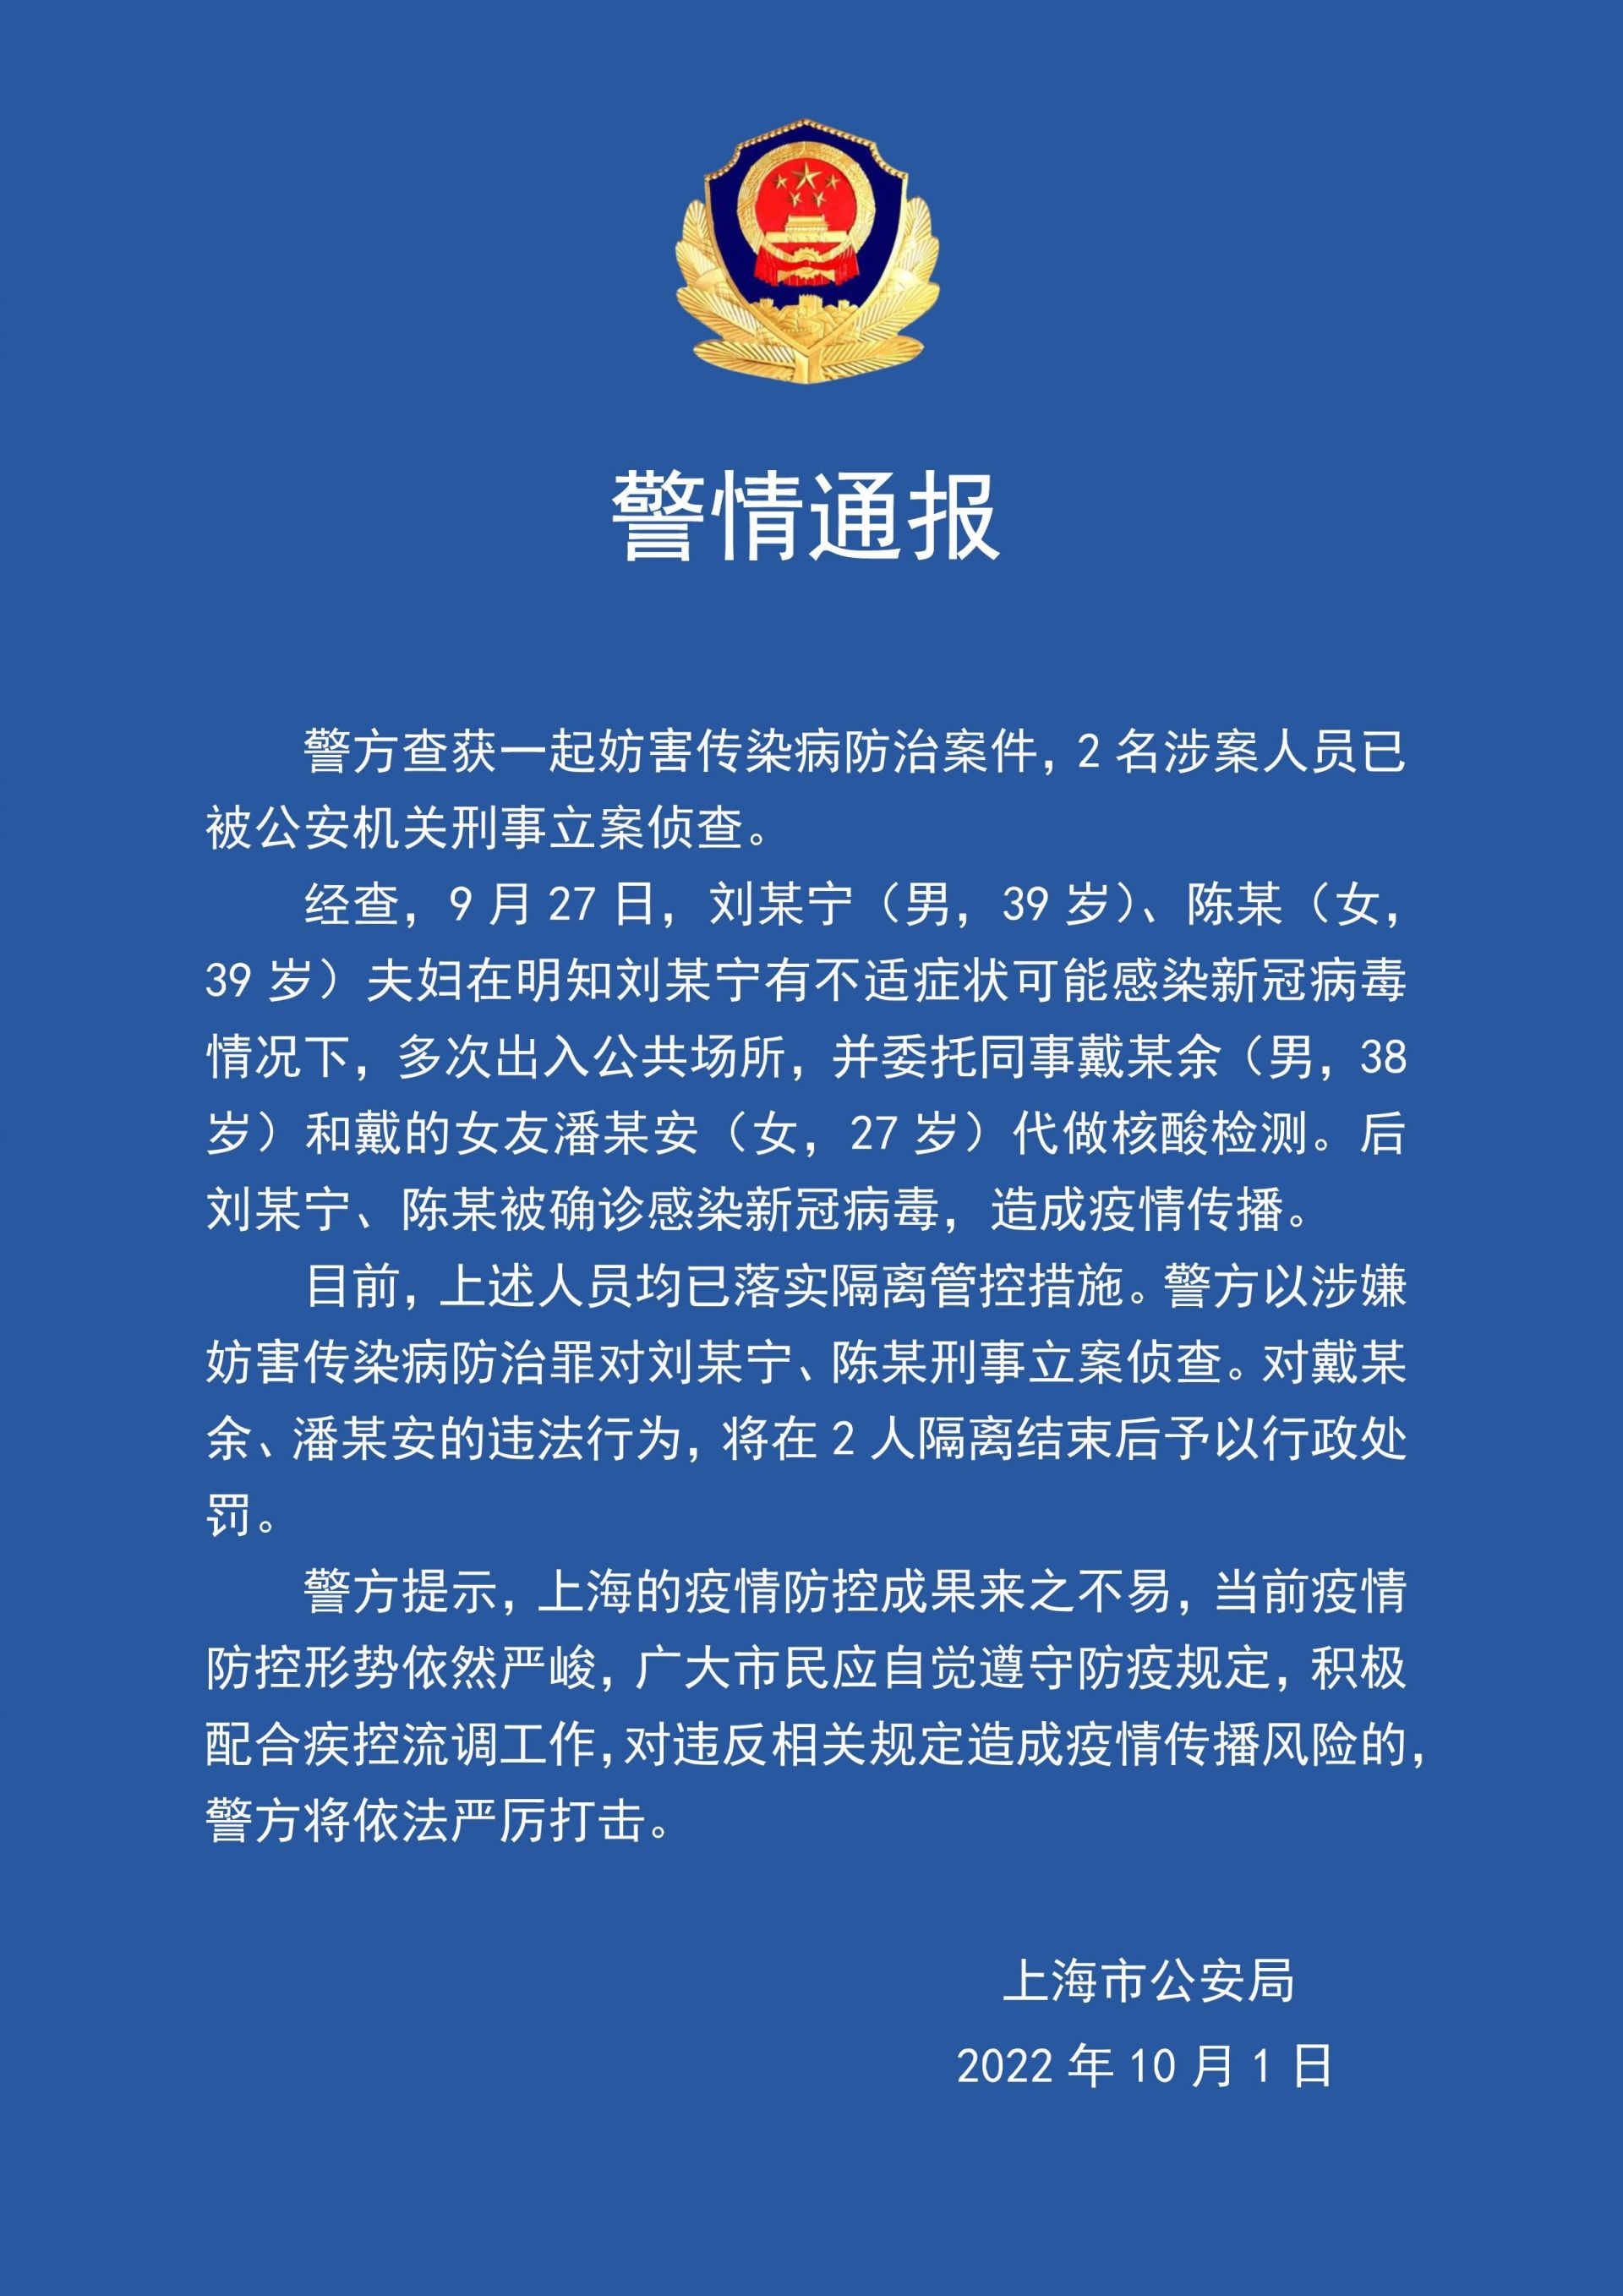 上海2人因妨害传染病防治被公安机关刑事立案侦查